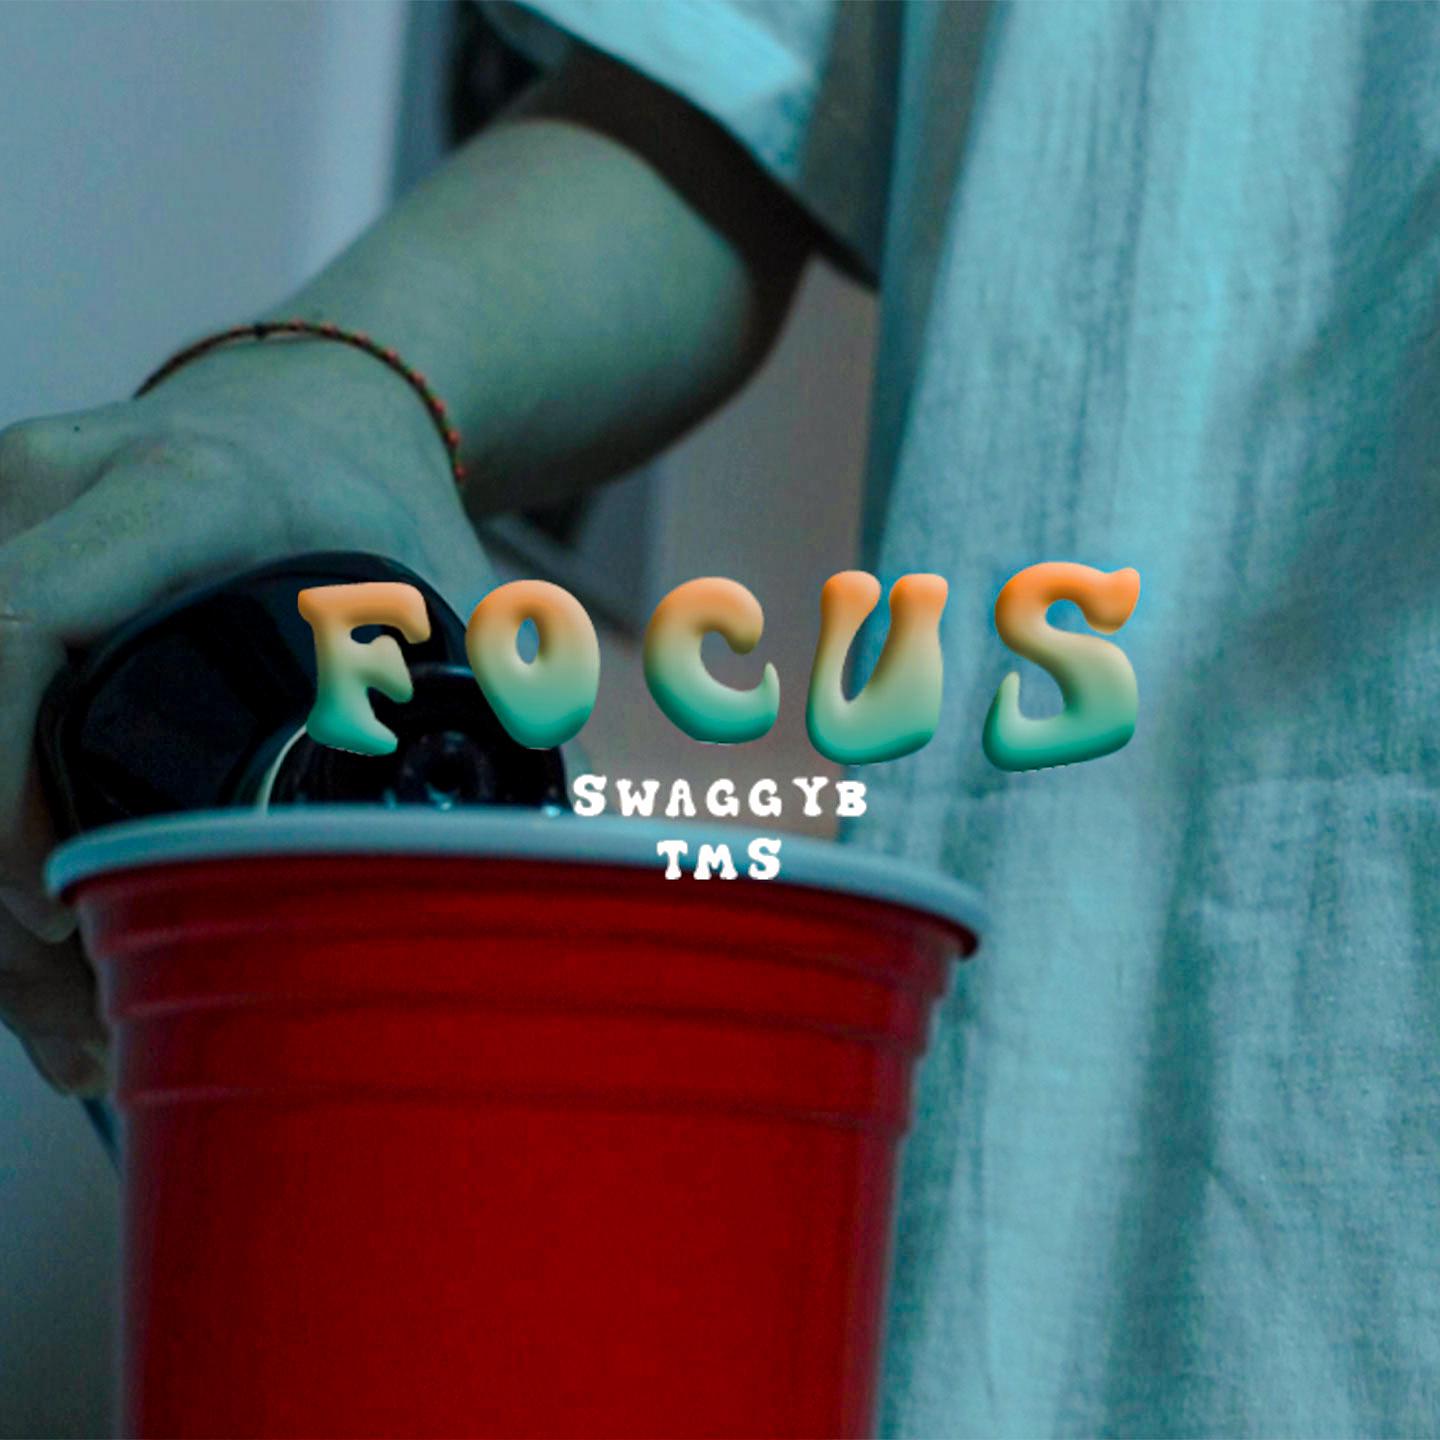 TMS - Focus